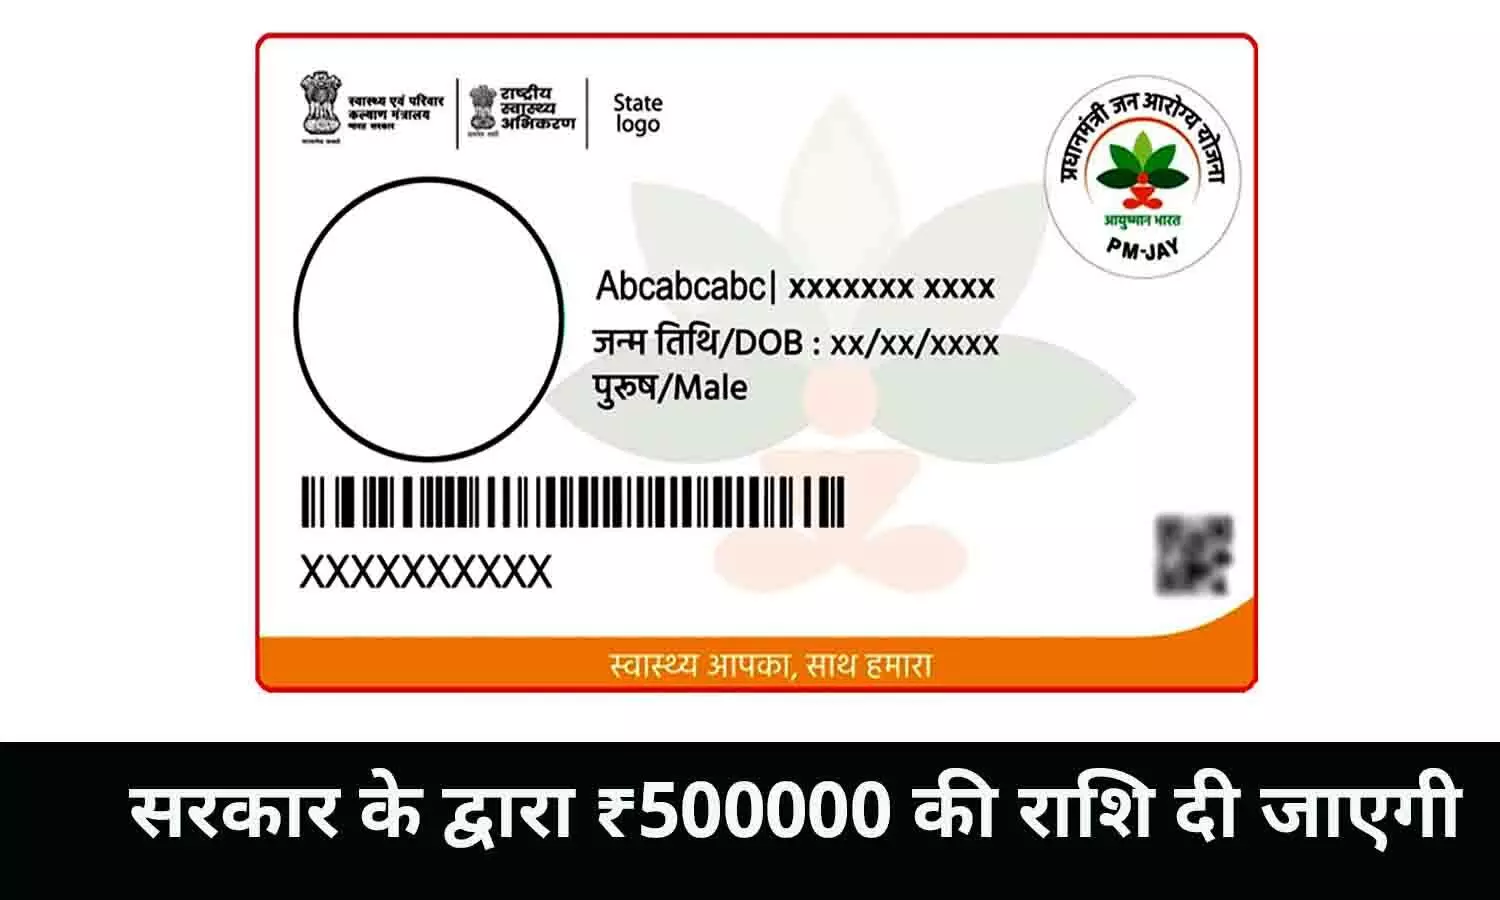 Ayushman card In MP: सरकार के द्वारा ₹500000 की राशि दी जाएगी